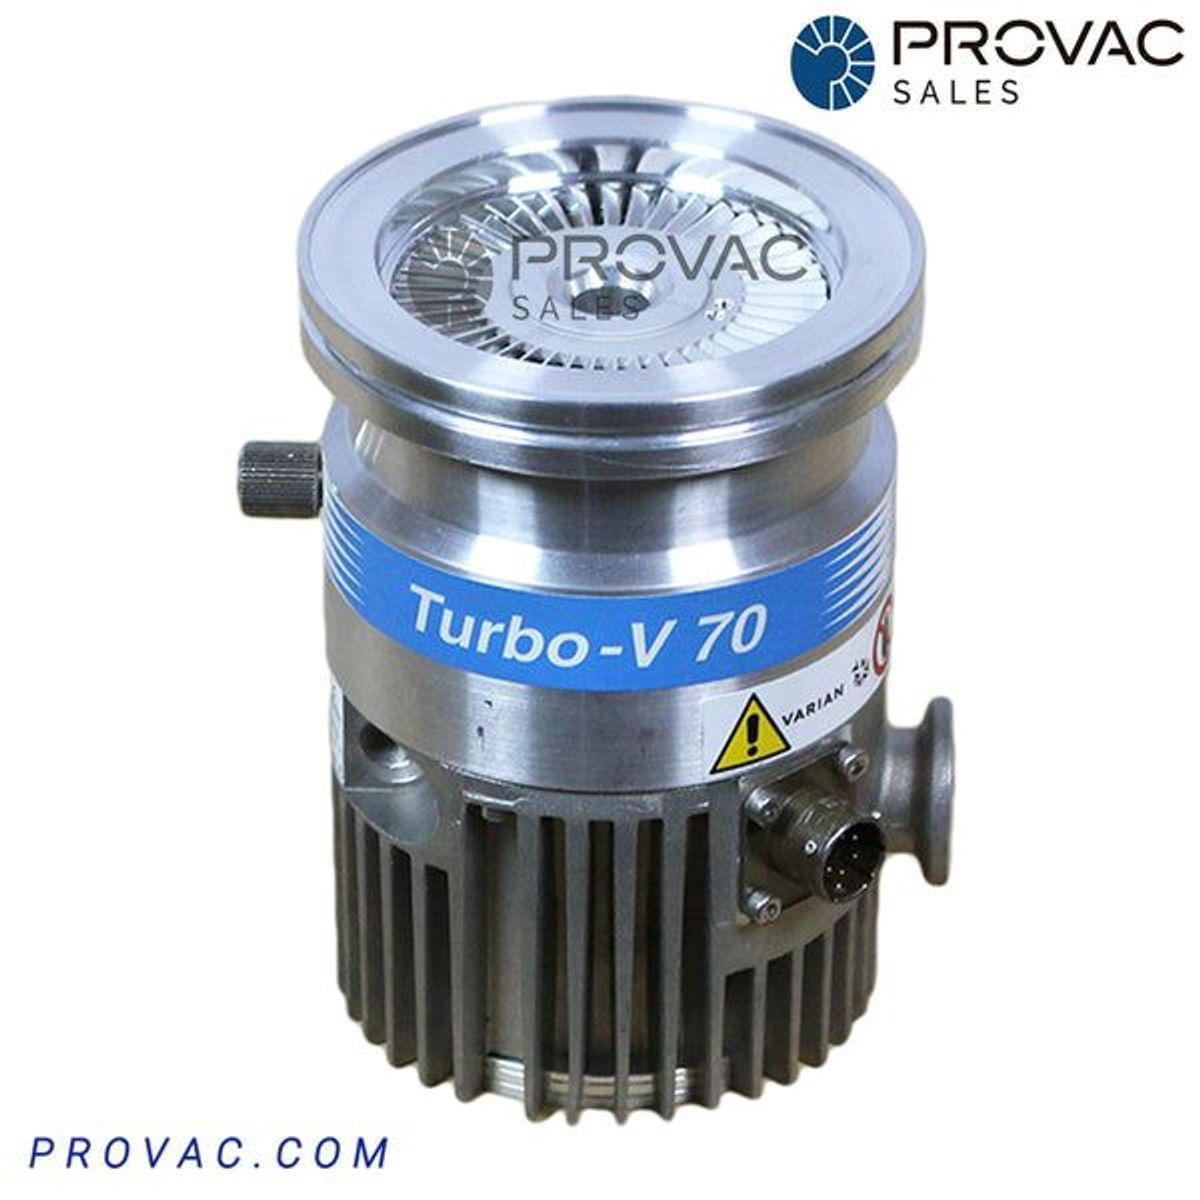 Varian TV-70 Turbo Pump, Rebuilt Image 3